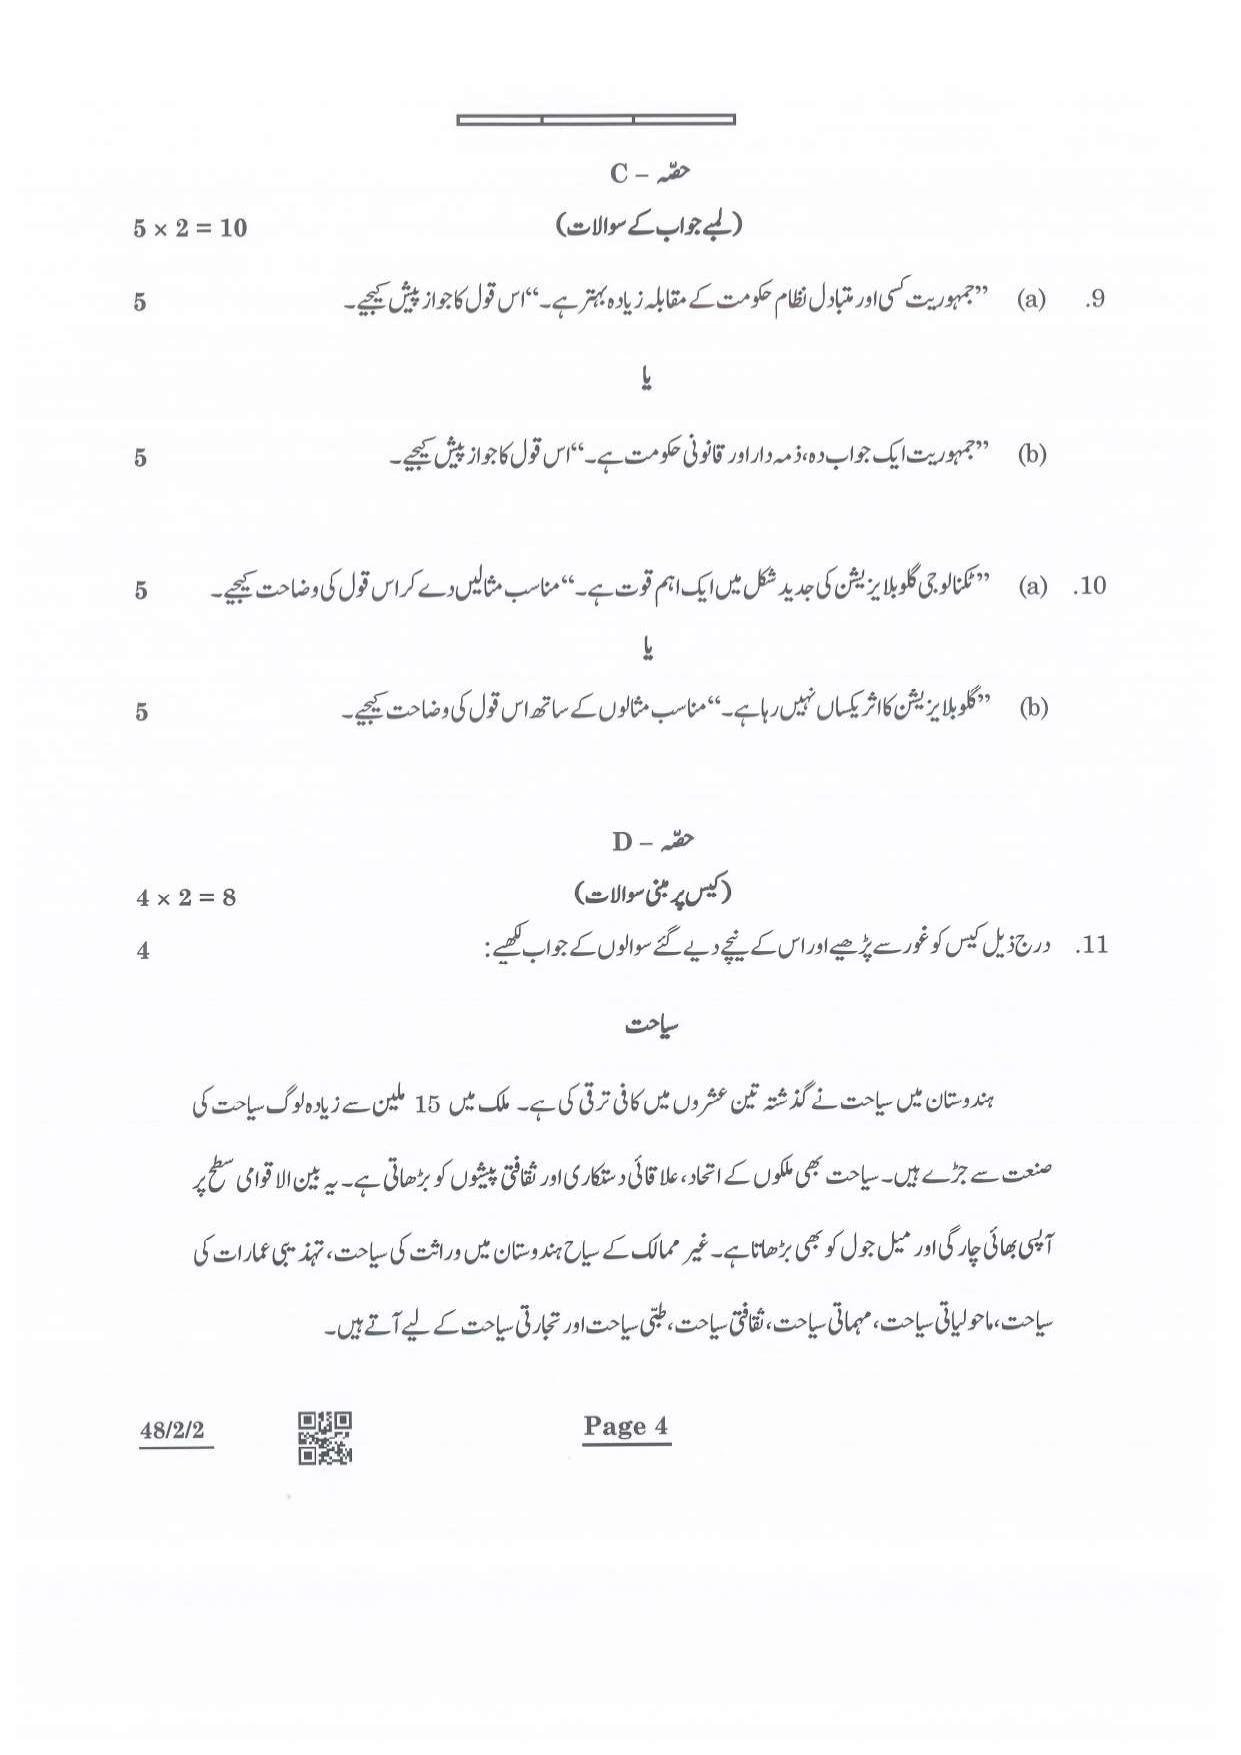 CBSE Class 10 48-2-2 Social Science Urdu Version 2022 Question Paper - Page 4